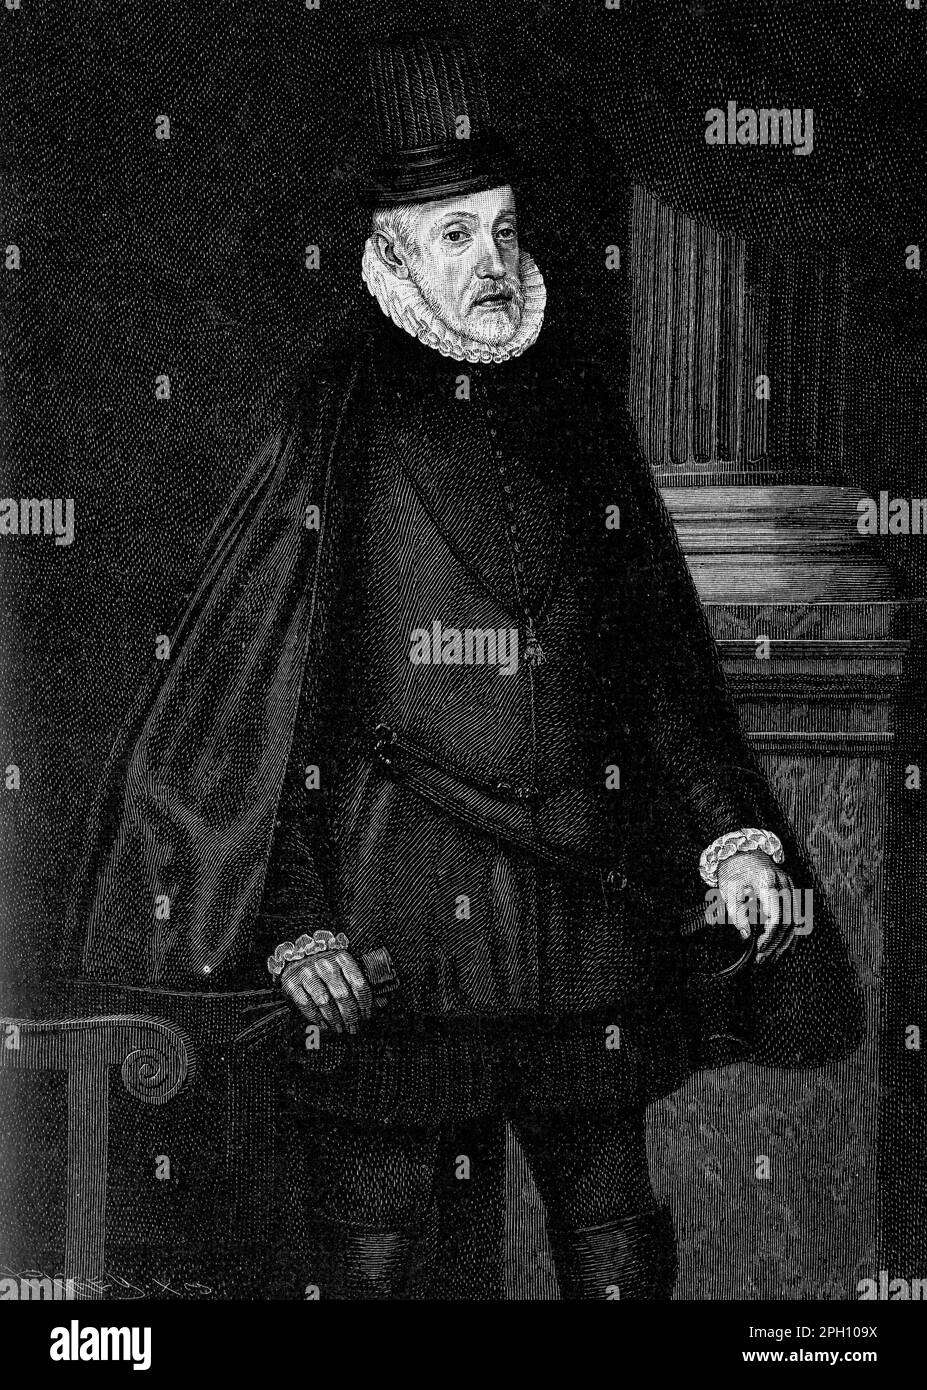 Filippo II (1527-1598) fu re di Spagna dal 1556 al 1598 e governò anche Portogallo, Napoli, Sicilia e Paesi Bassi spagnoli. Un devoto cattolico, si vedeva come un difensore della fede e combatteva contro il protestantesimo e l'impero ottomano. Costruì il vasto impero spagnolo, ma affrontò anche problemi economici e ribellioni nei suoi territori, tra cui la rivolta olandese. L'eredità di Filippo è mescolata, con alcuni che lo vedono come un forte difensore del cattolicesimo, mentre altri criticano il suo governo autoritario e le sue politiche economiche Foto Stock